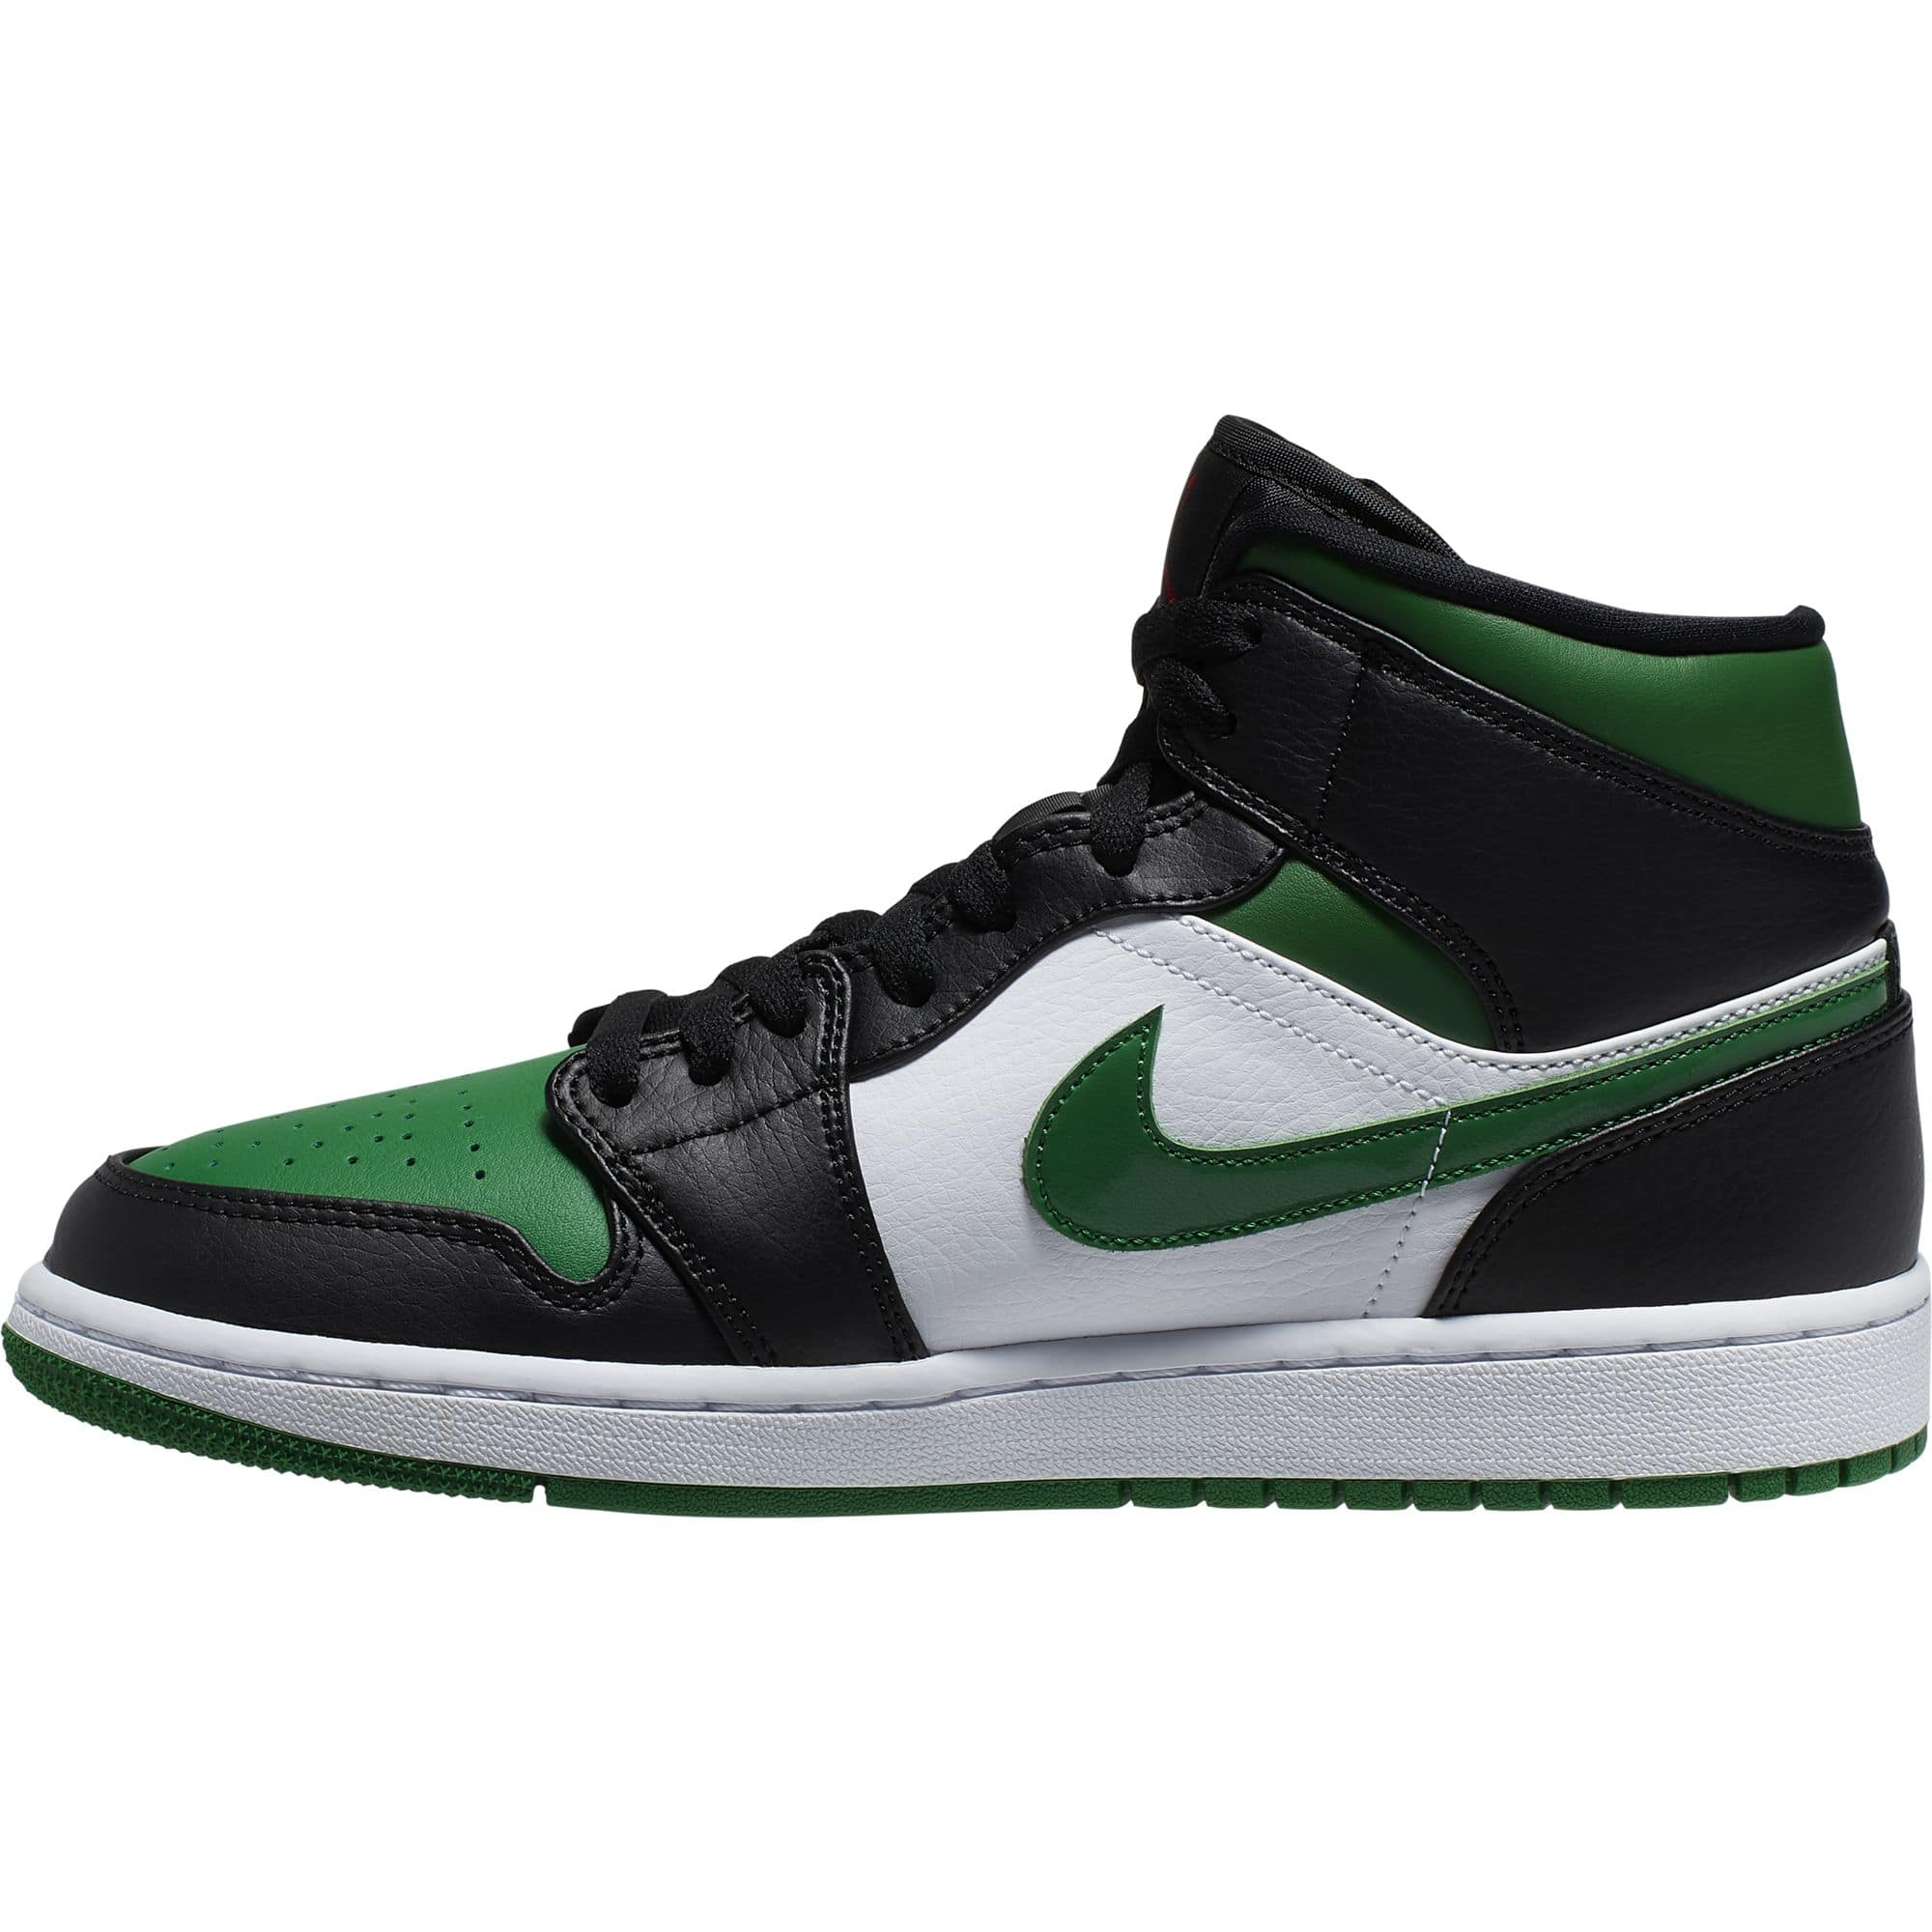 green black white jordan ones